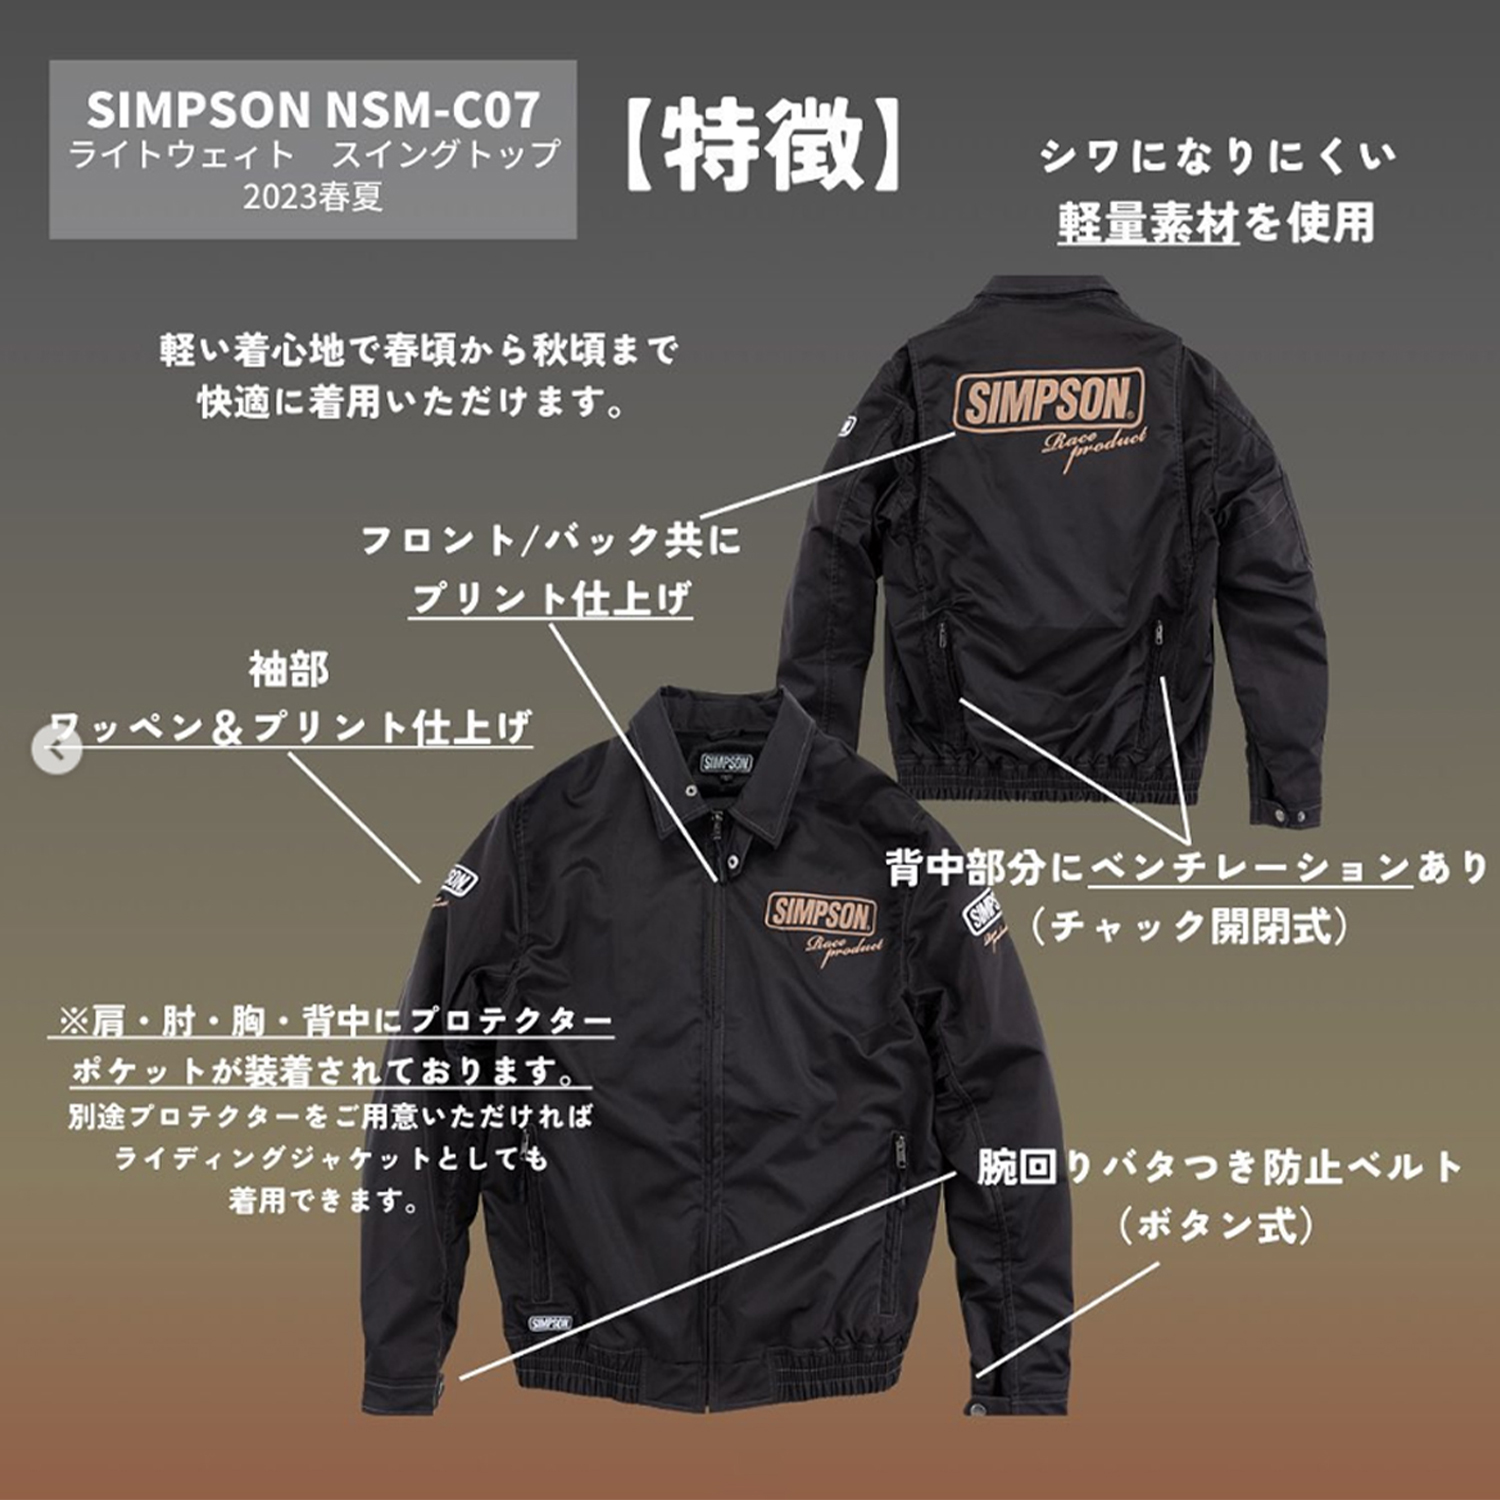 セール品 シンプソンジャケット 春夏モデル NSM-C09 Simpson 2023SS 